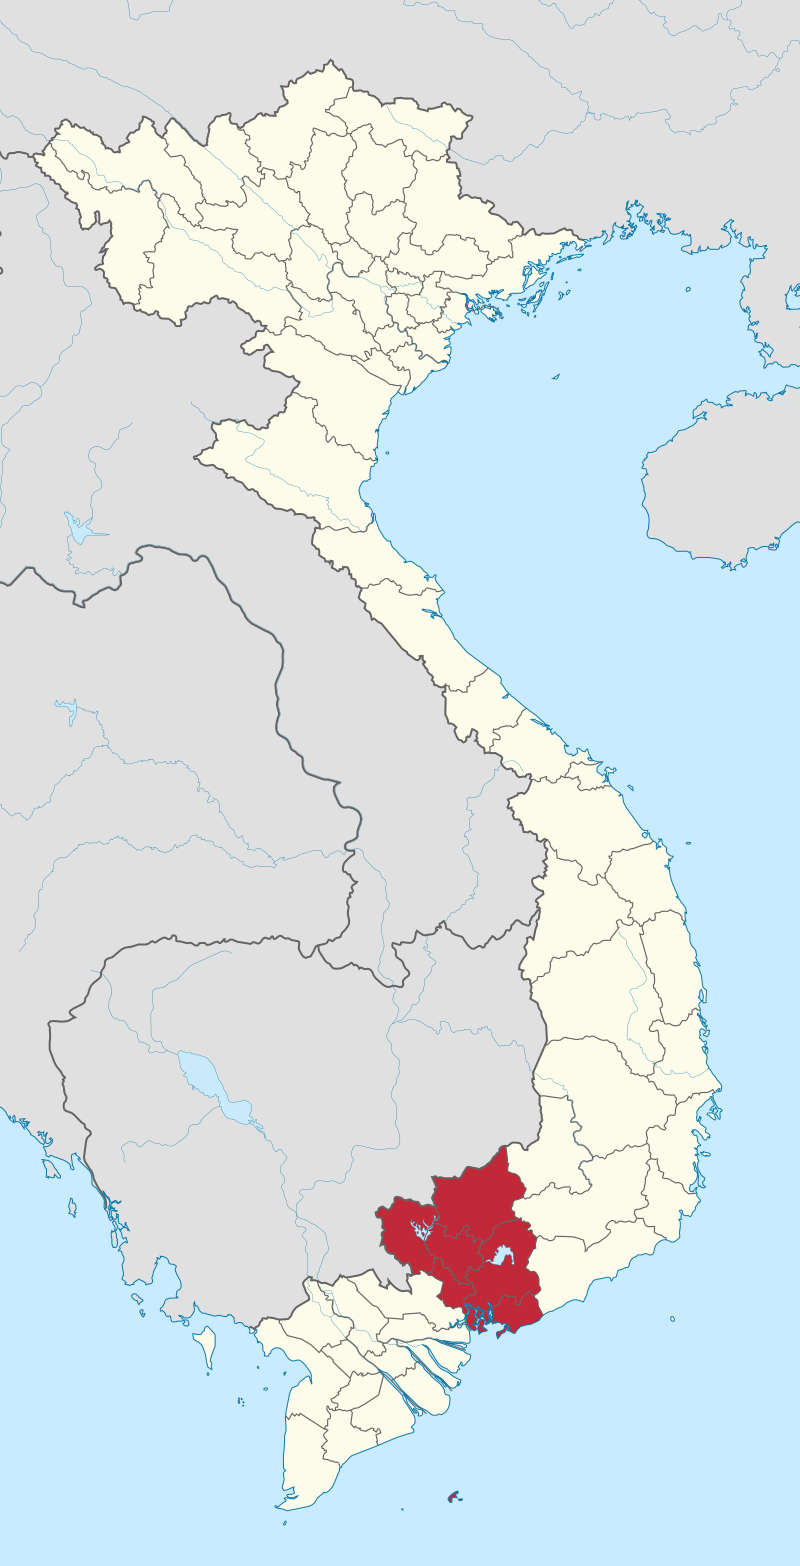 Đông Nam Bộ - Wikipedia tiếng Việt: Đông Nam Bộ là khu vực có tiềm năng đầy hứa hẹn với nhiều ngành công nghiệp, đặc biệt là du lịch và sản xuất. Truy cập trang Wikipedia tiếng Việt, người dân có thể tìm hiểu thêm về lịch sử, địa lý và văn hóa của vùng đất này.